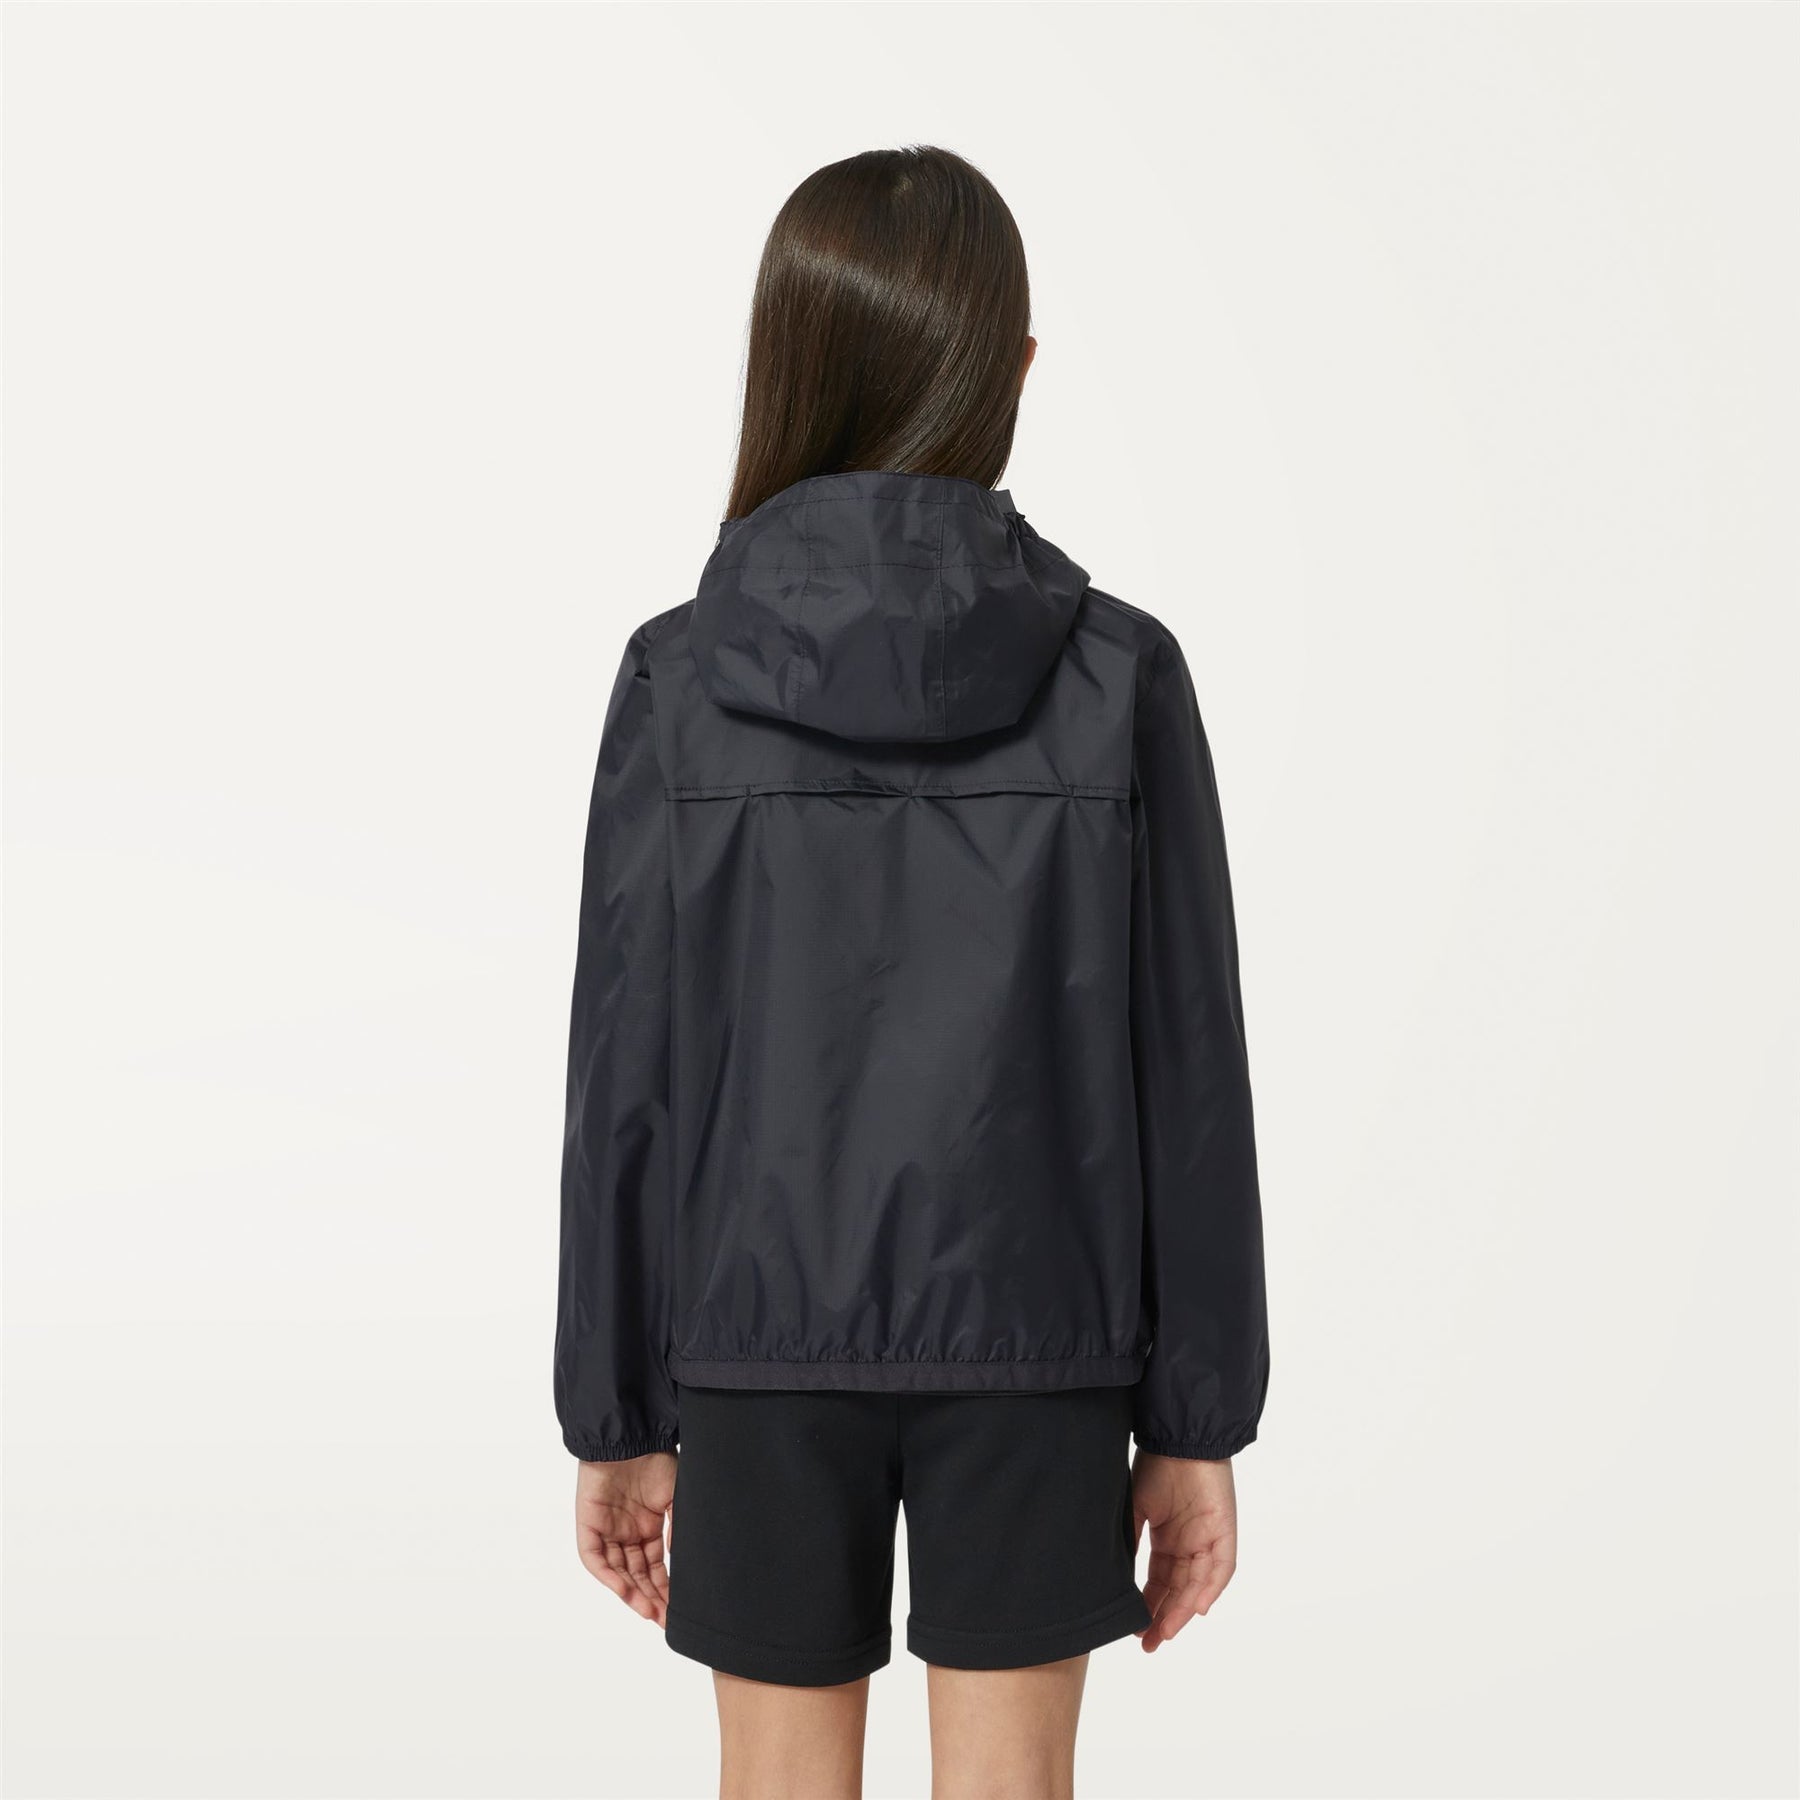 Claude - Kids Packable Full Zip Waterproof Rain Jacket in Black Pure